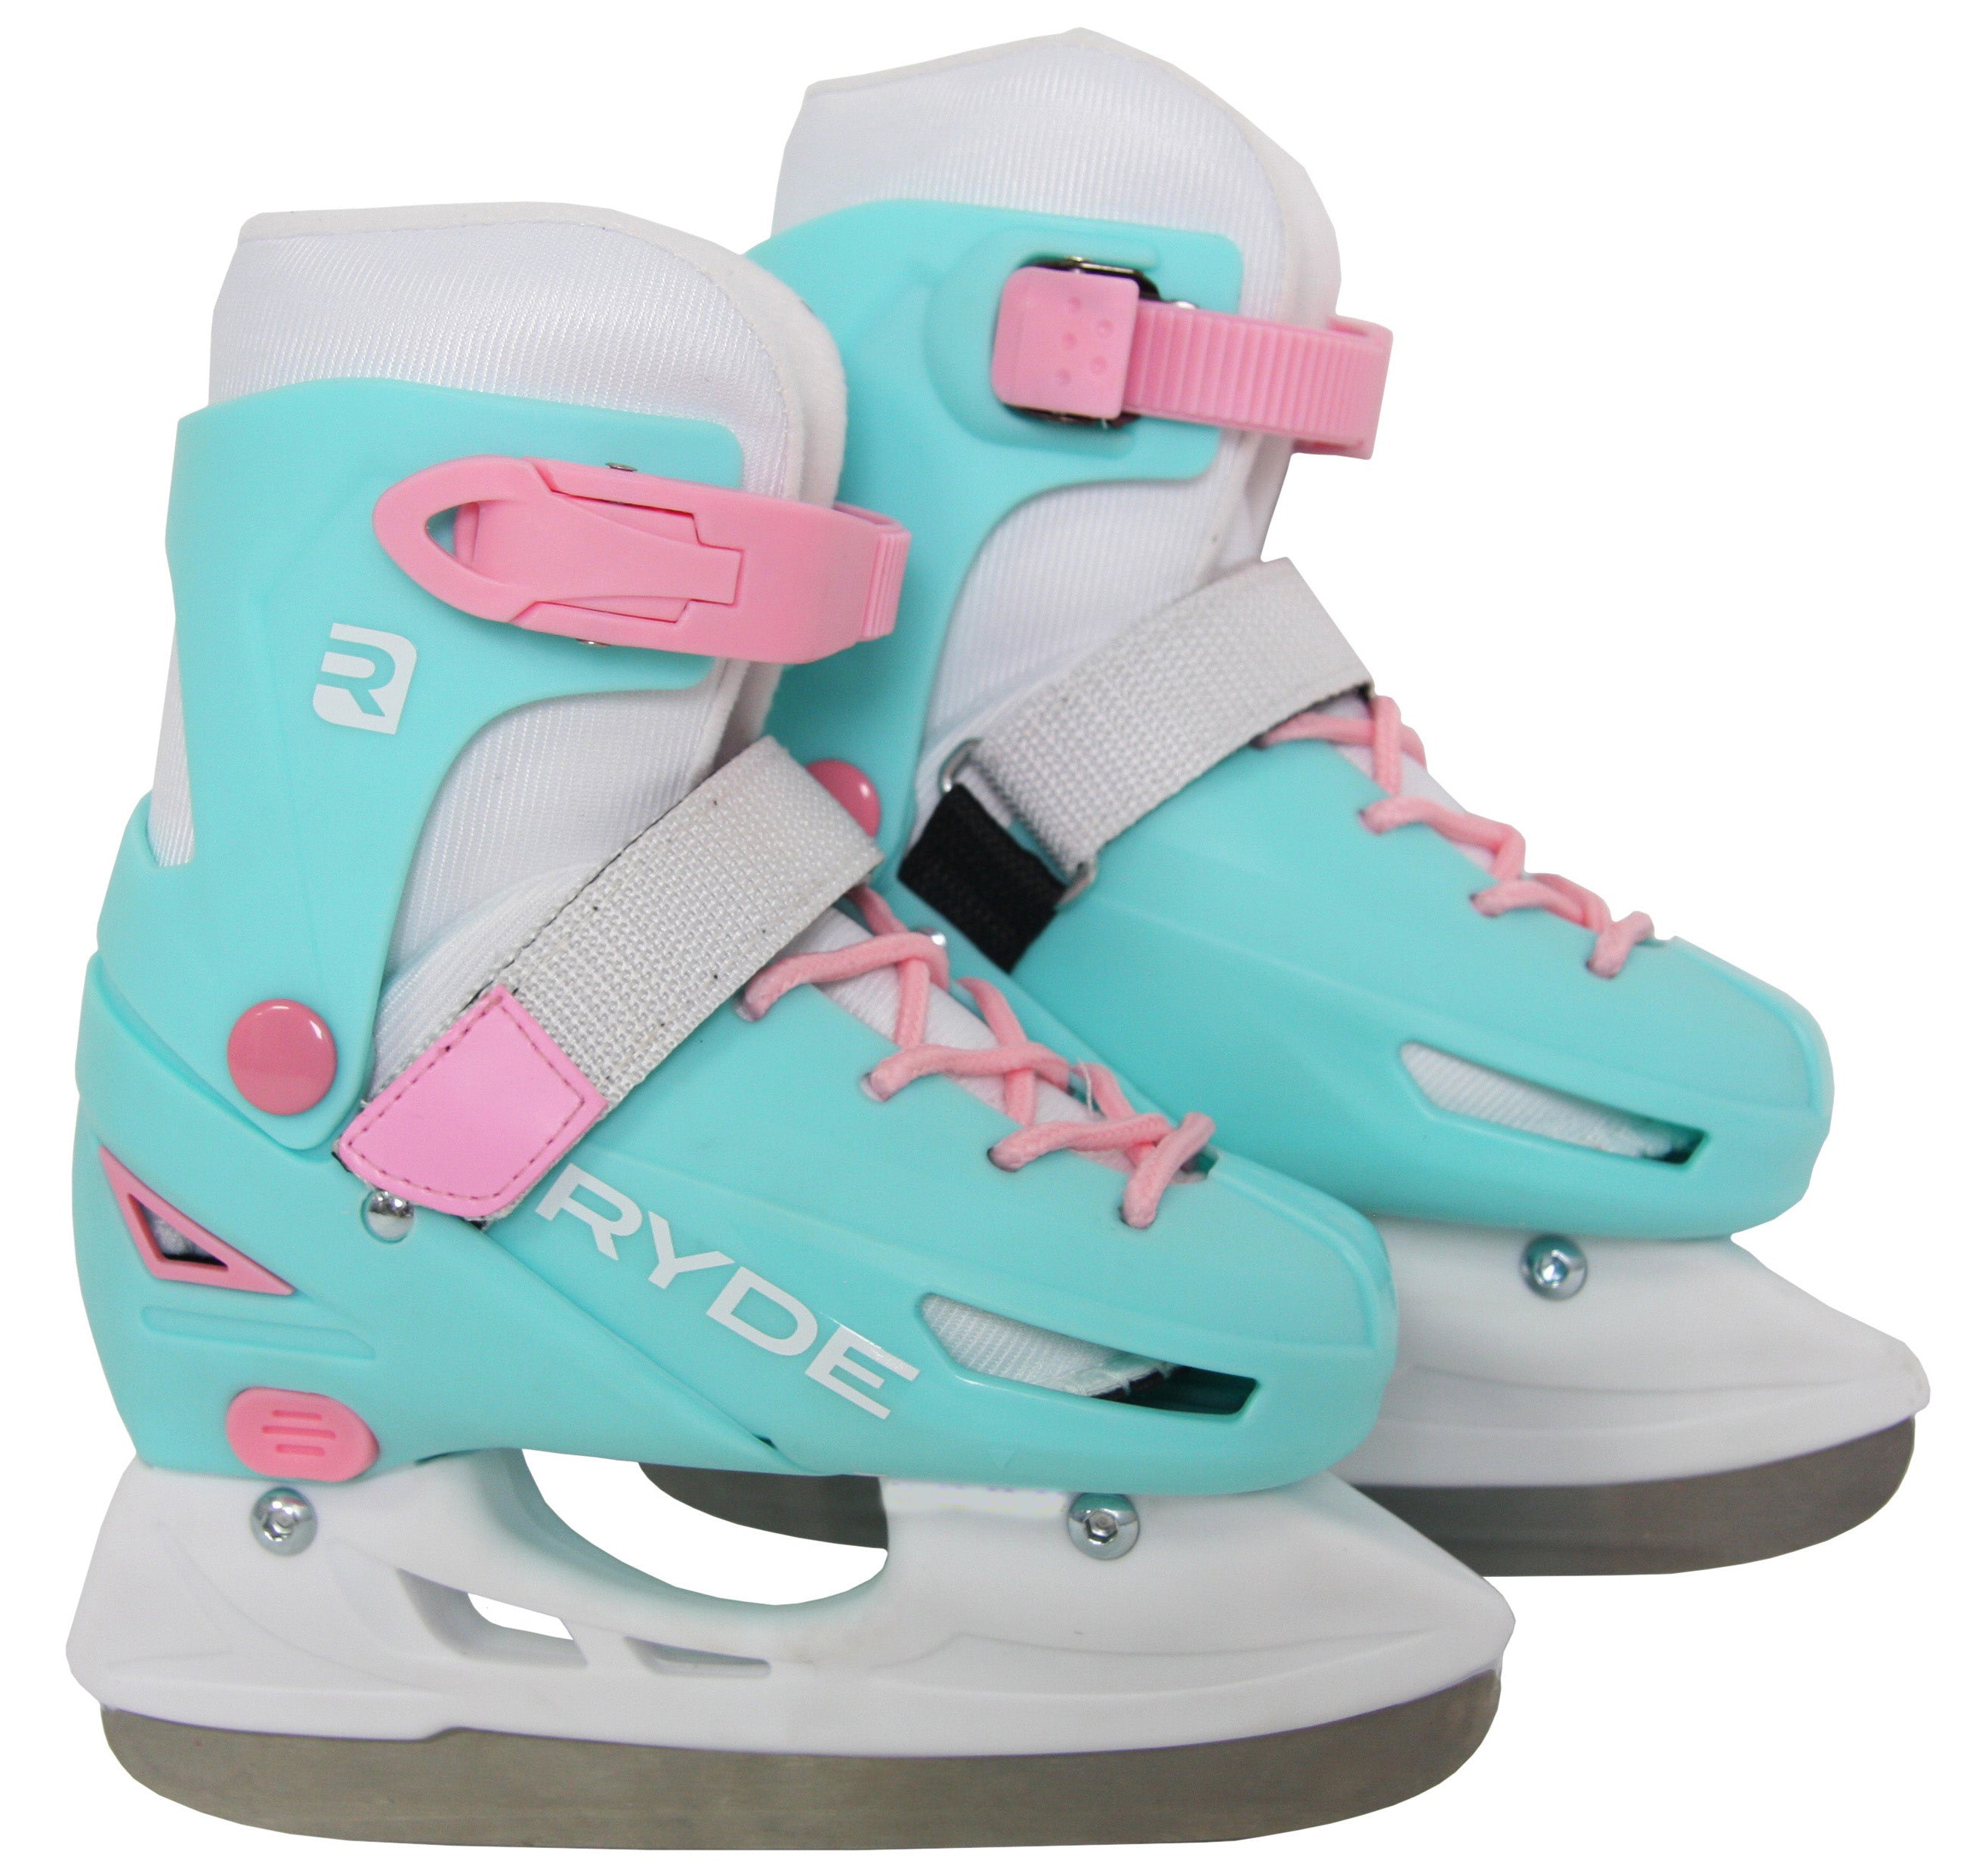 Ryde Ice Skate Girls Y12-2